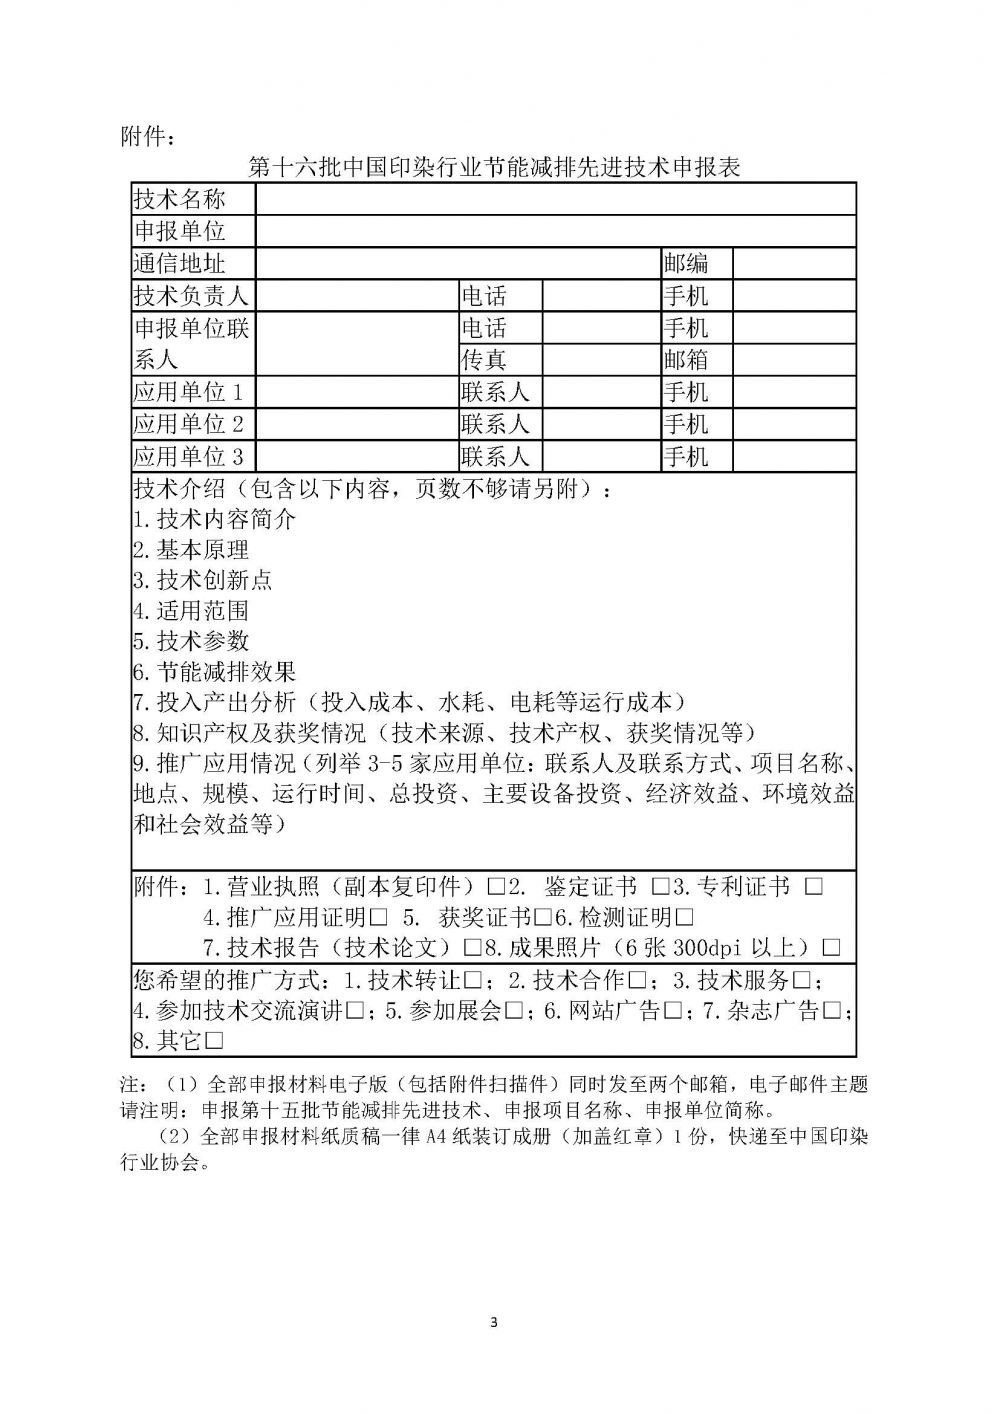 关于征集“第十六批中国印染行业节能减排目录“的通知_页面_3.jpg